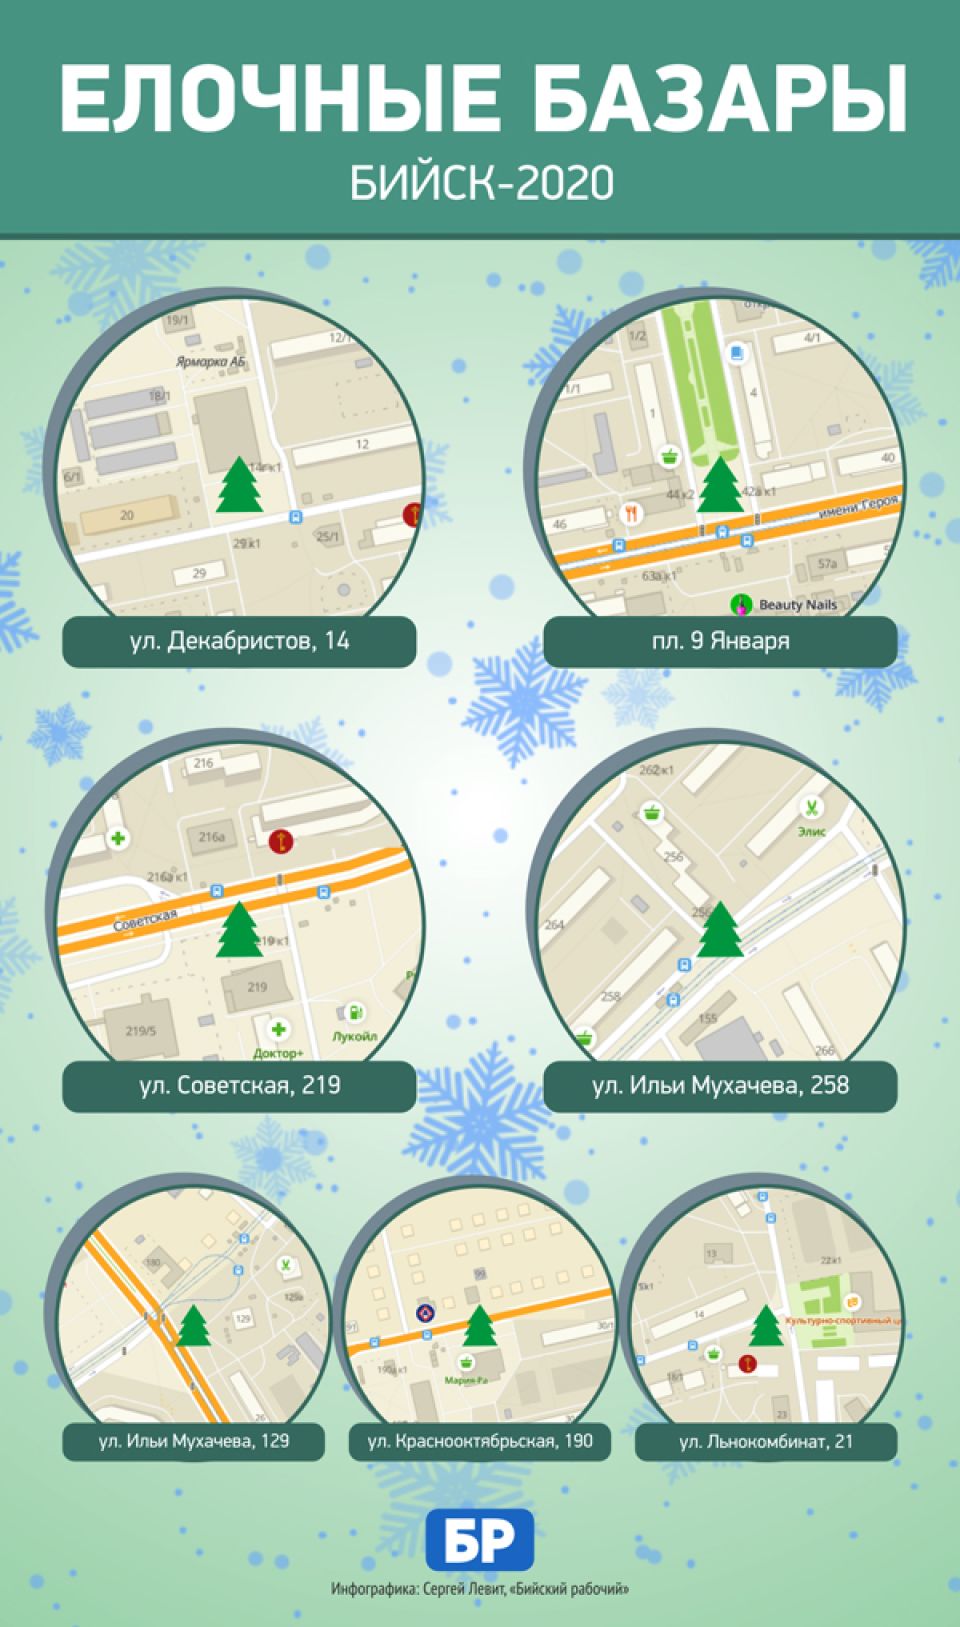 Где купить новогоднюю елку в Бийске: карта базаров